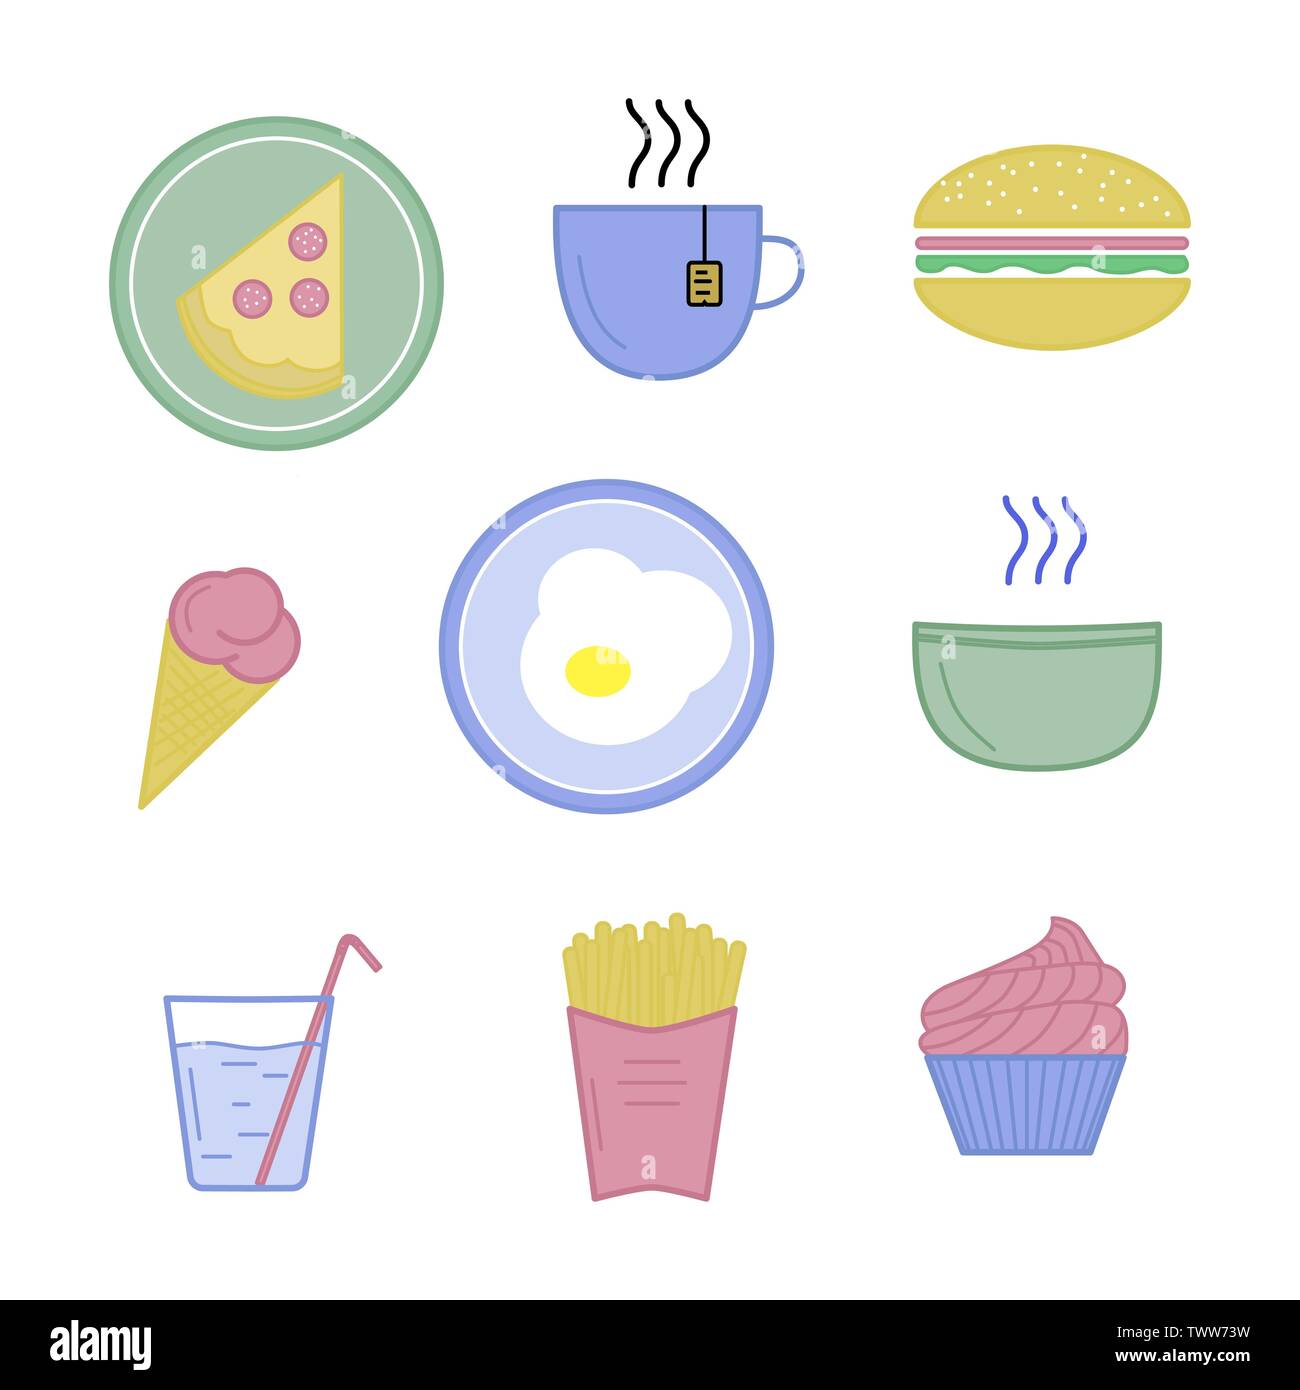 Vector Illustration von Lebensmitteln Symbole. Hamburger, Spiegelei, Pizza, Platte, heiße Suppe, Tee, Eis, Kuchen, Pommes frites, Mineralwasser, Glas, Becher Stock Vektor